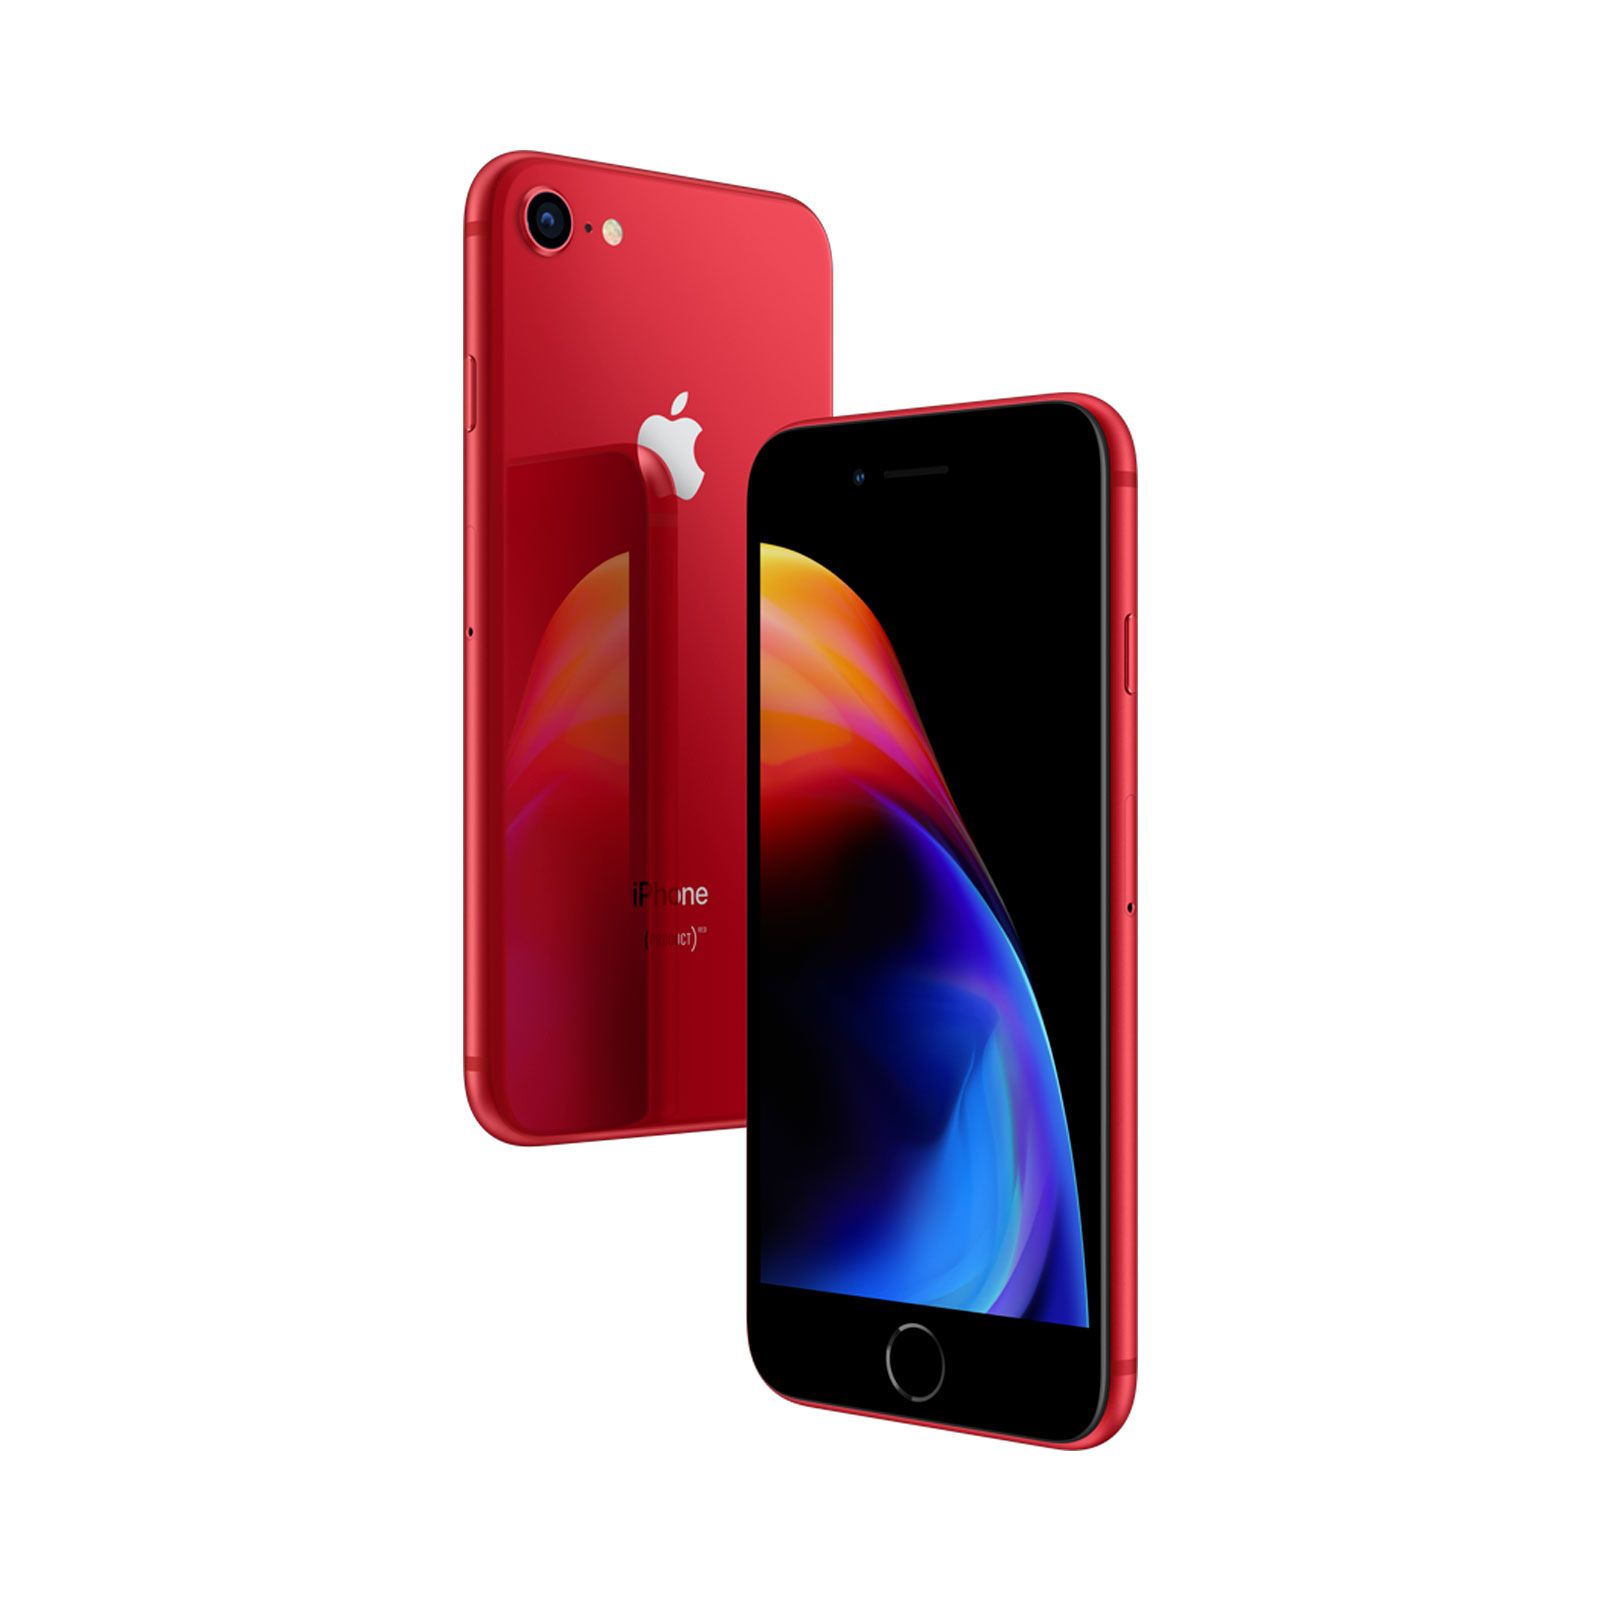 Apple iPhone 8, 256GB, (PRODUCT)RED, Trieda A - použité, záruka 12 mesiacov